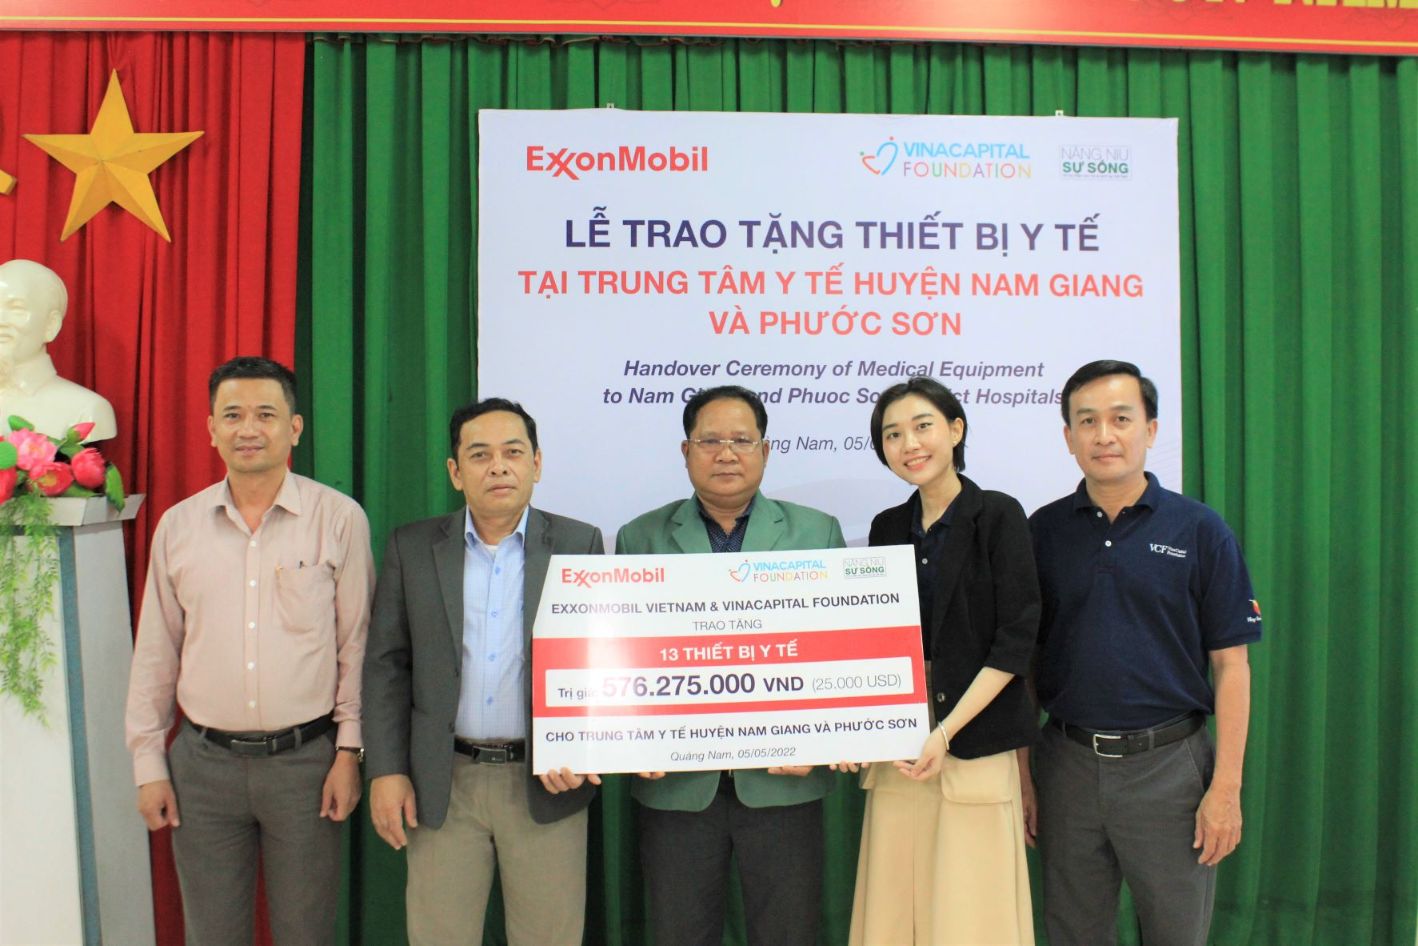 Đại diện VCF trao bảng tài trợ tượng trưng cho đại diện UBND huyện Nam Giang và 2 TTYT 1 ExxonMobil Việt Nam và VinaCapital Foundation trao tặng thiết bị y tế tại Quảng Nam